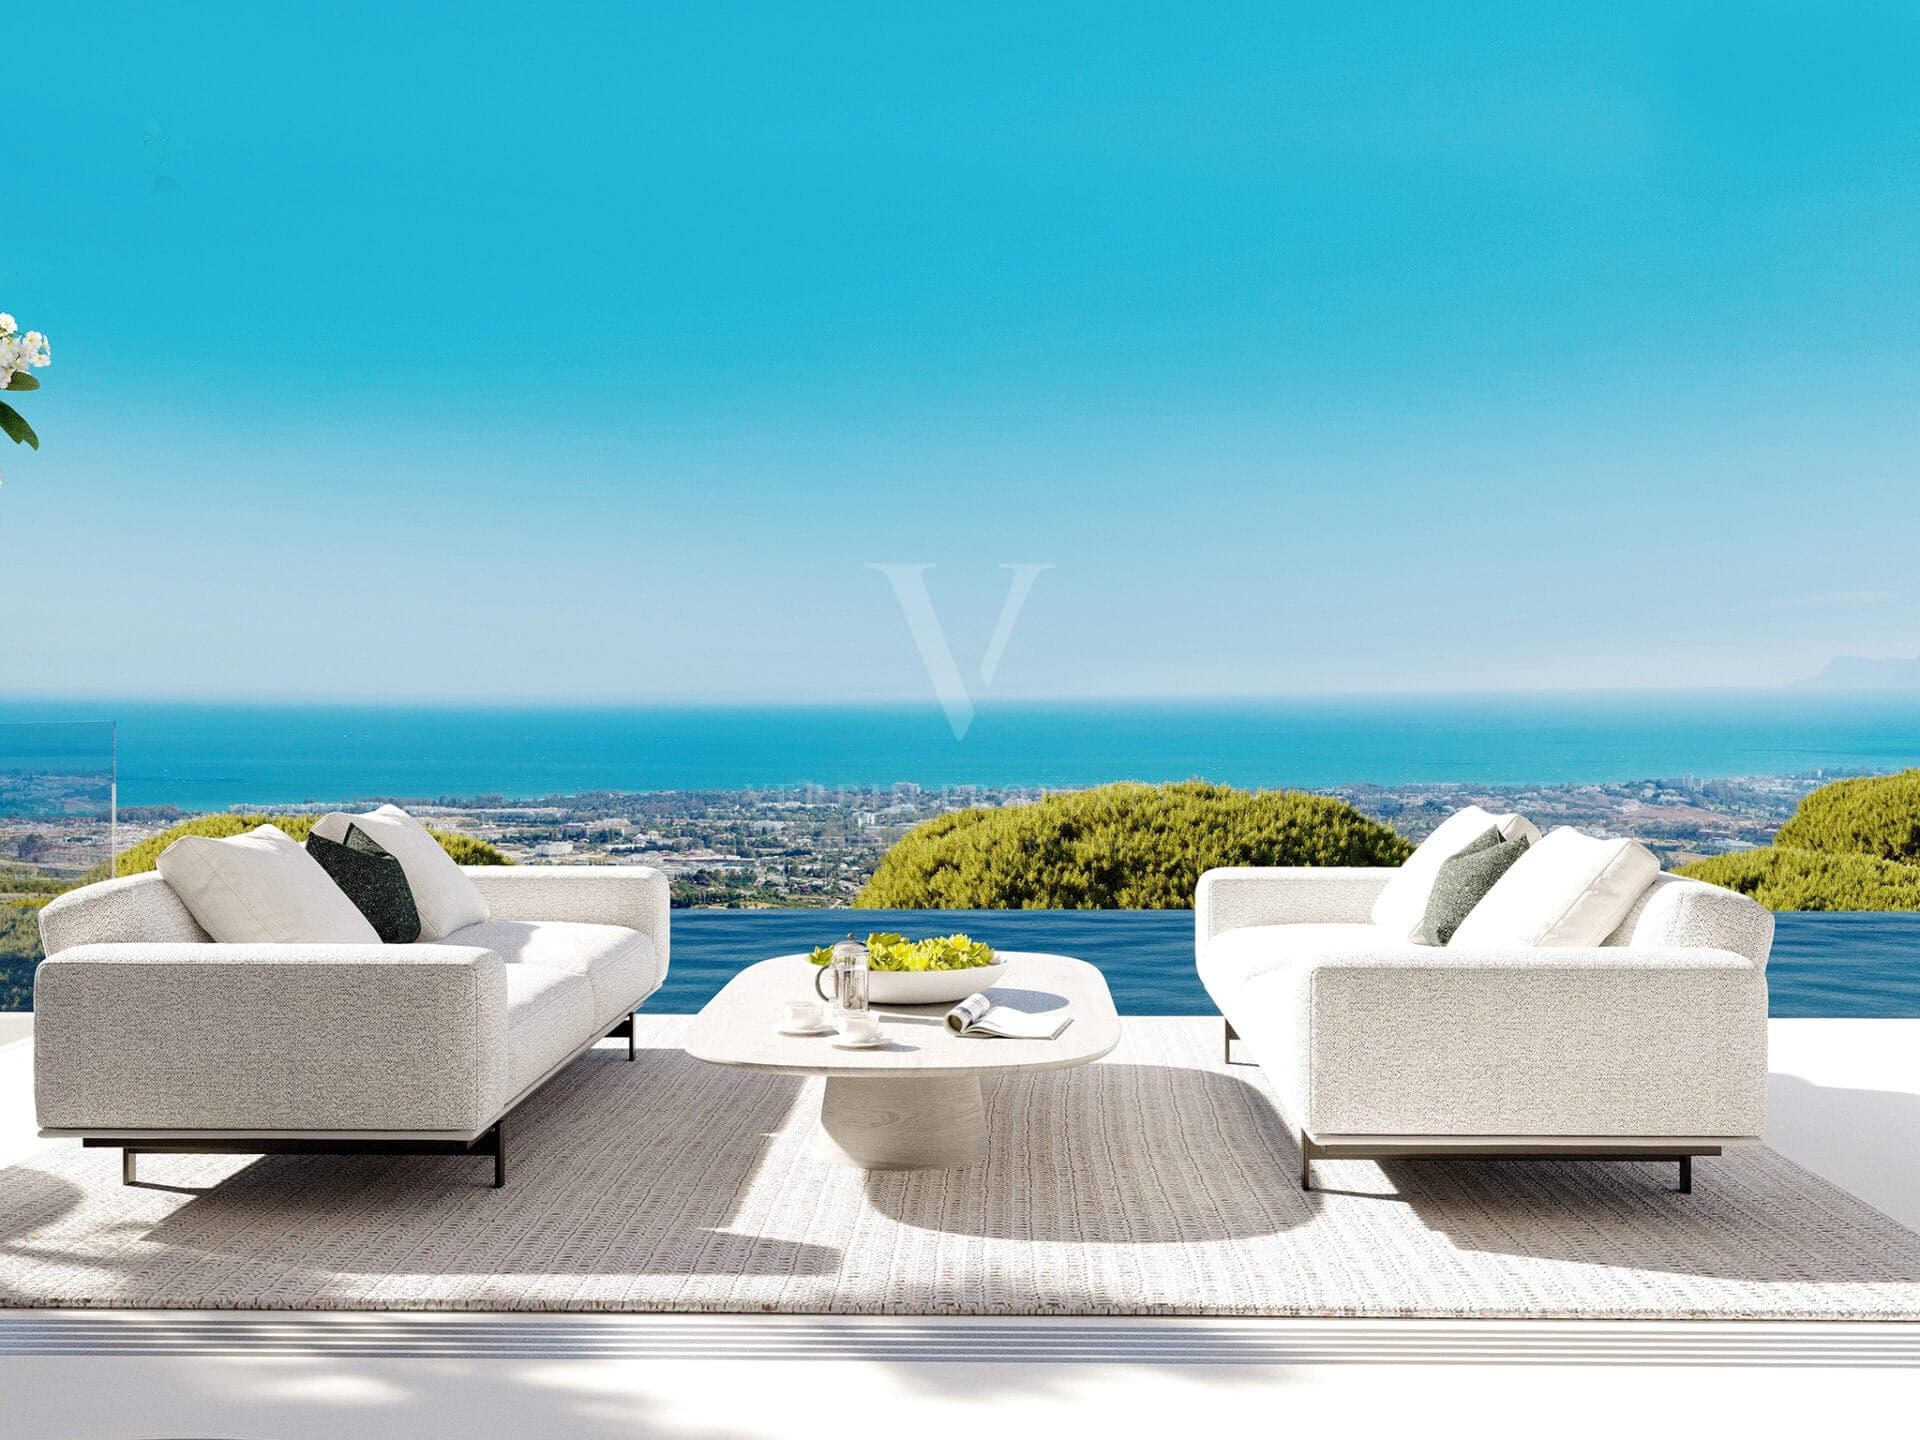 Vista Lago Residences - Verdin Property - Nouveau développement Marbella